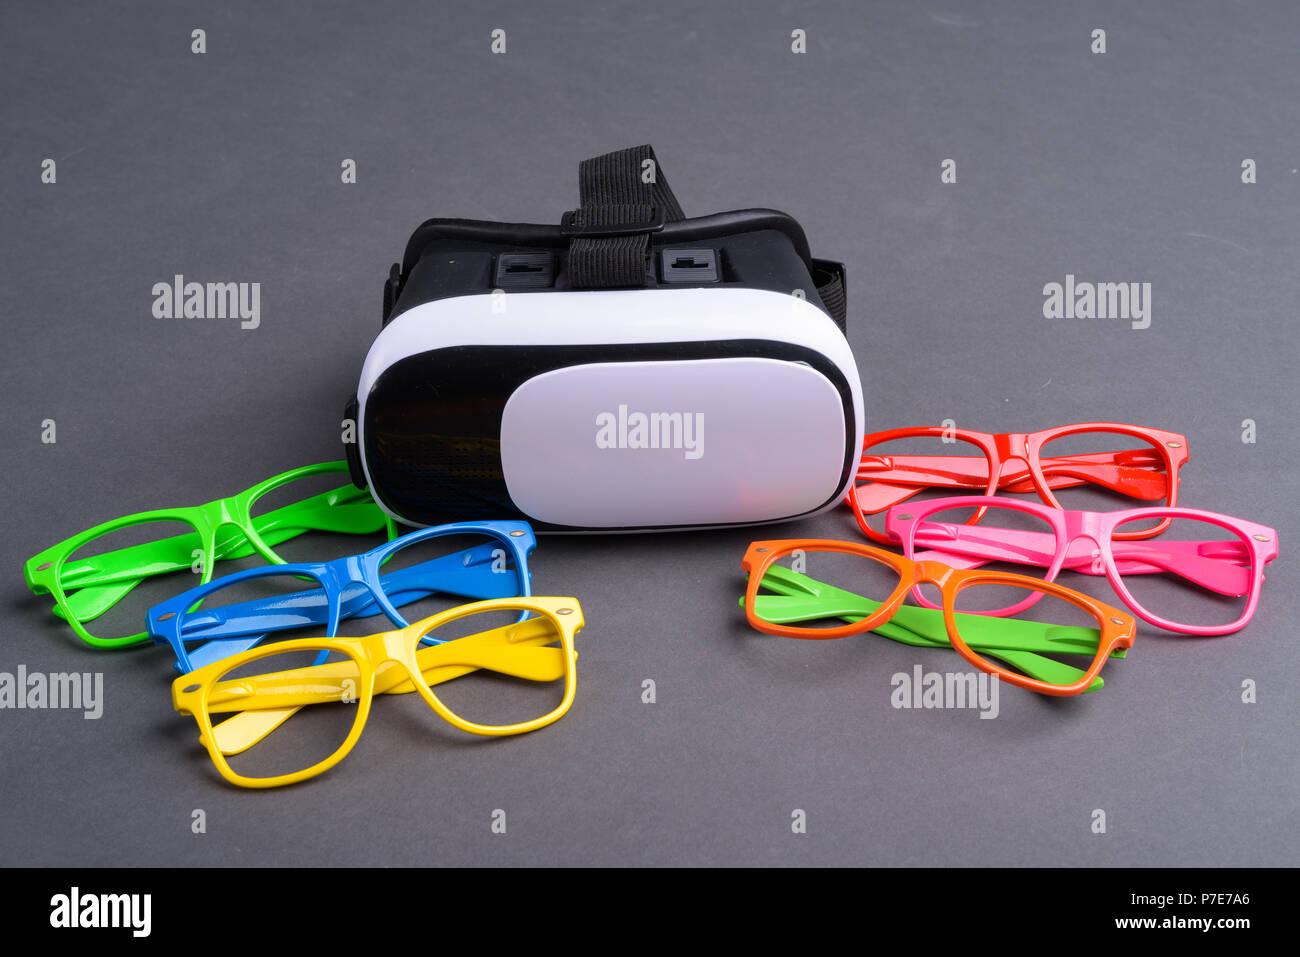 Occhiali colorati e occhiali per realtà virtuale Foto Stock